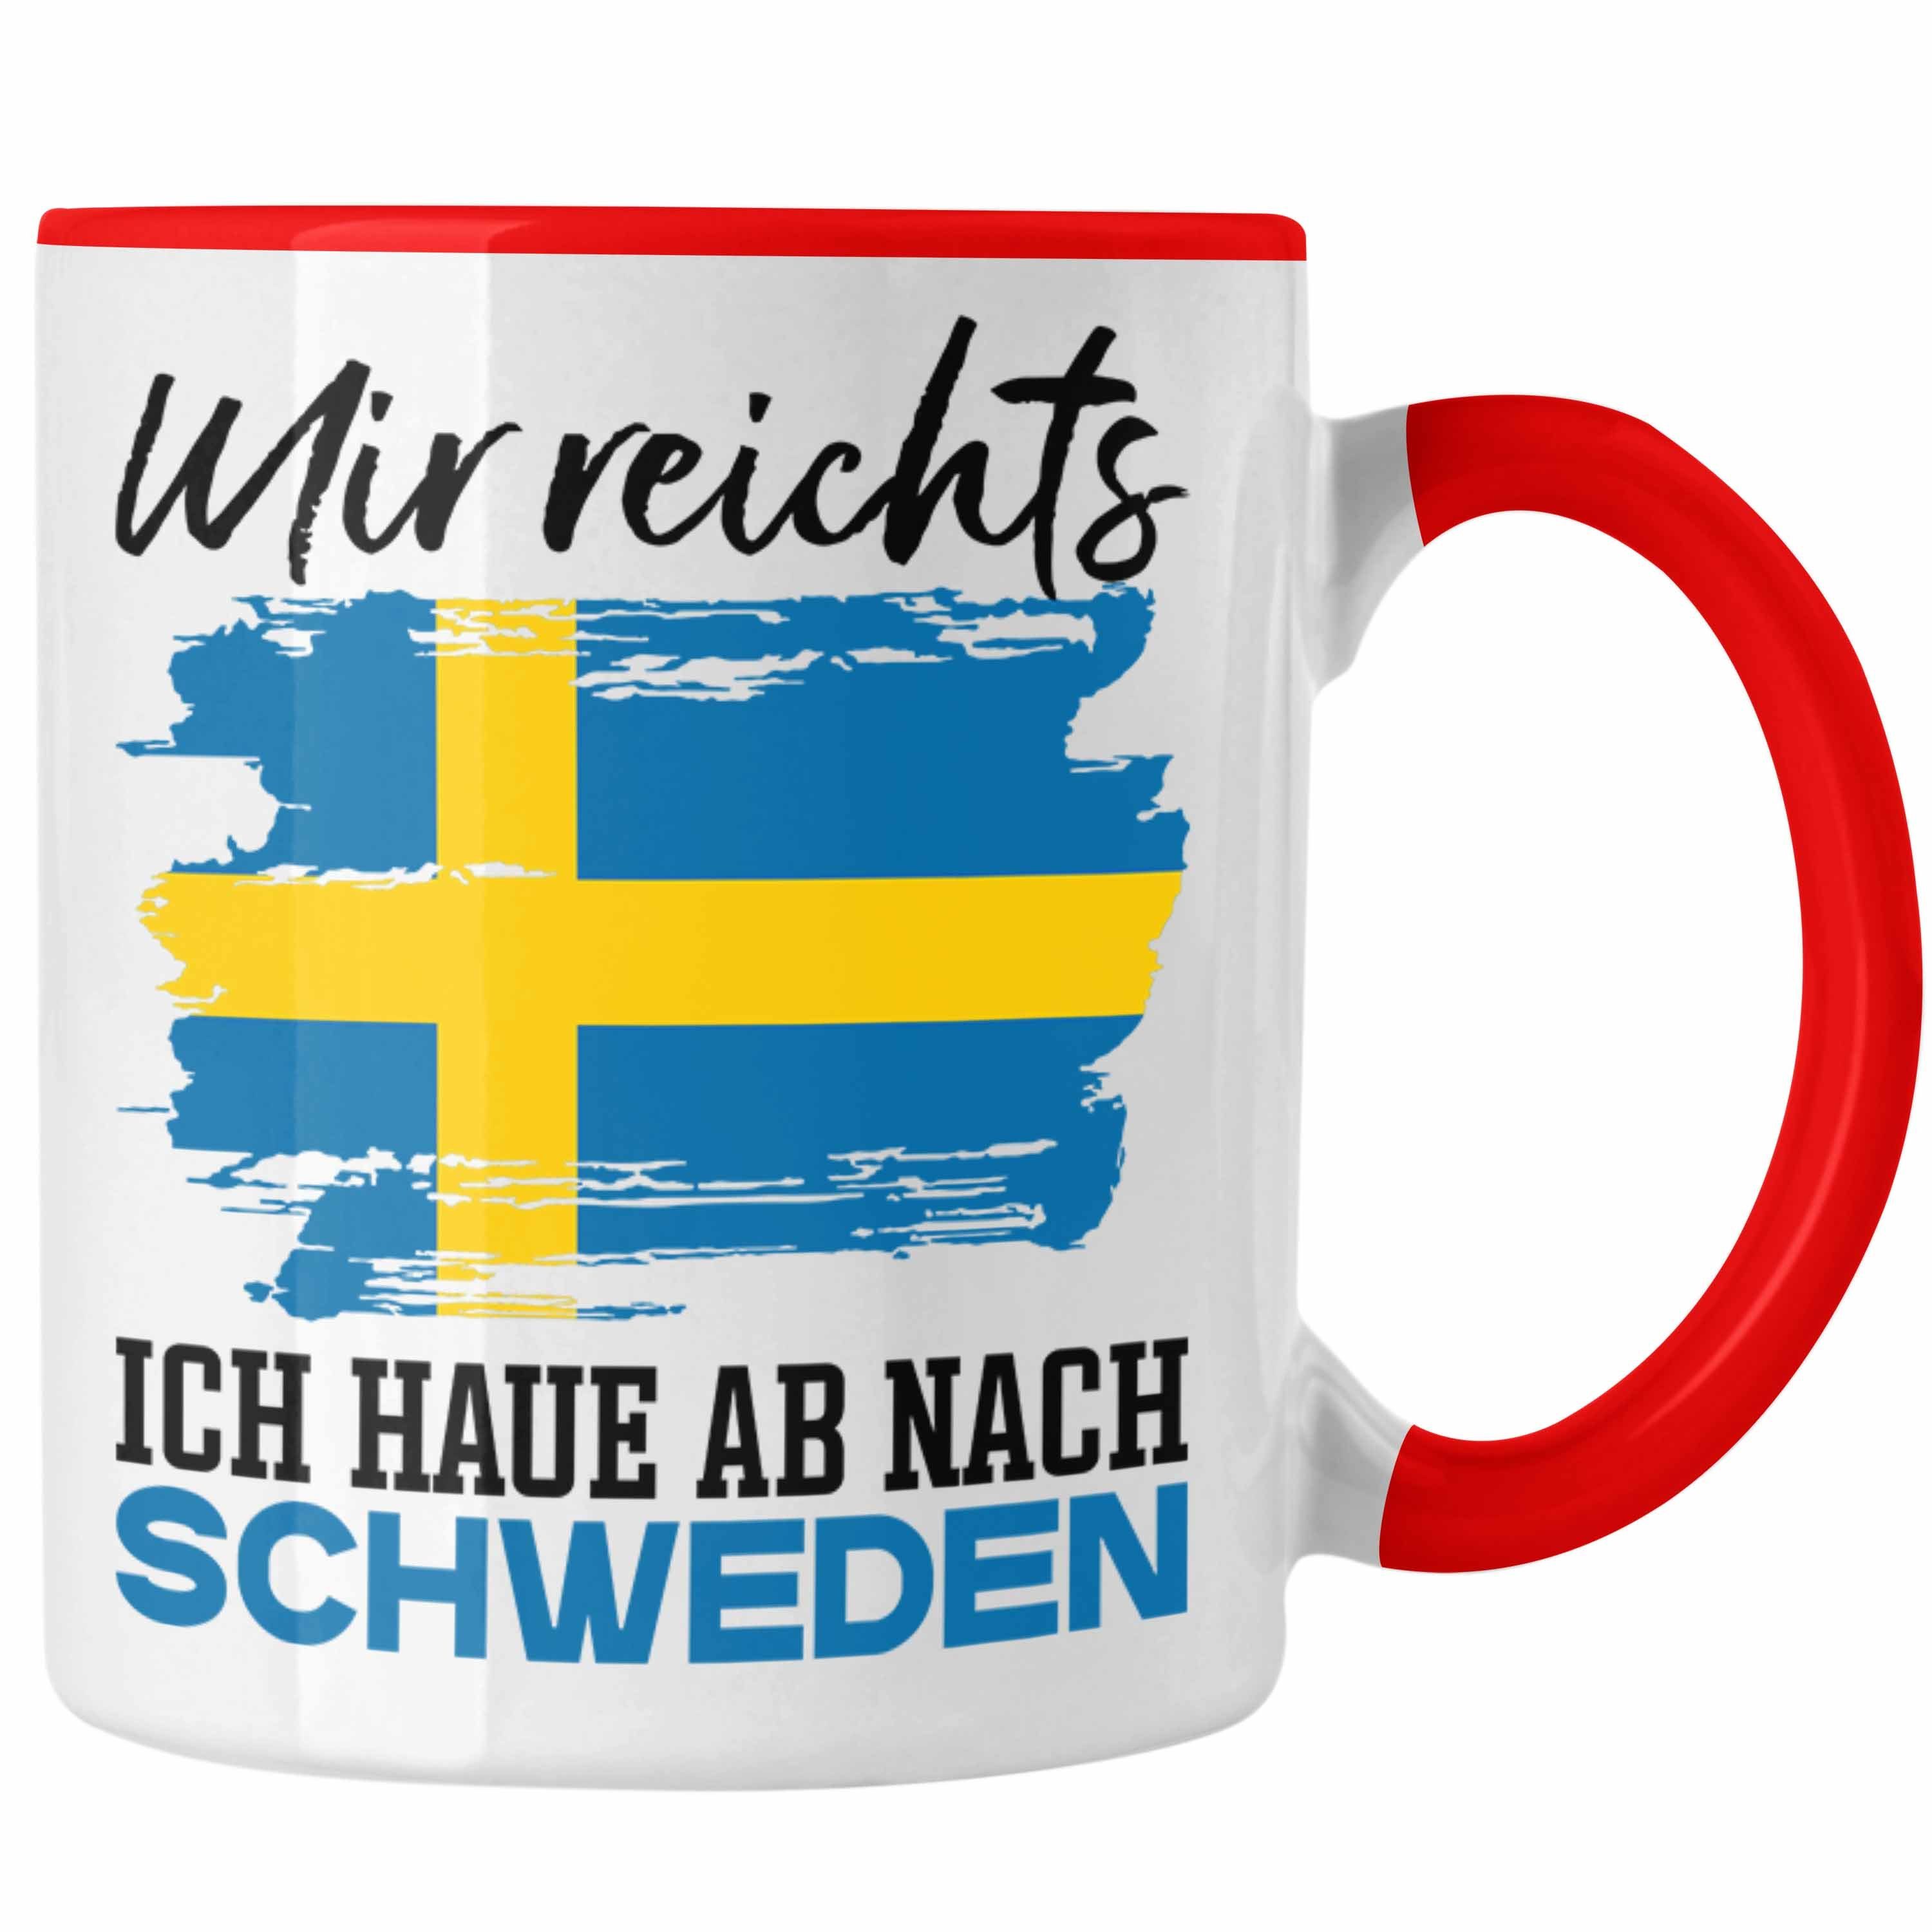 Tasse U Urlaub Mir Tasse Geschenk Nach Ich Hau Schweden Schweden Ab Reichts Rot Trendation